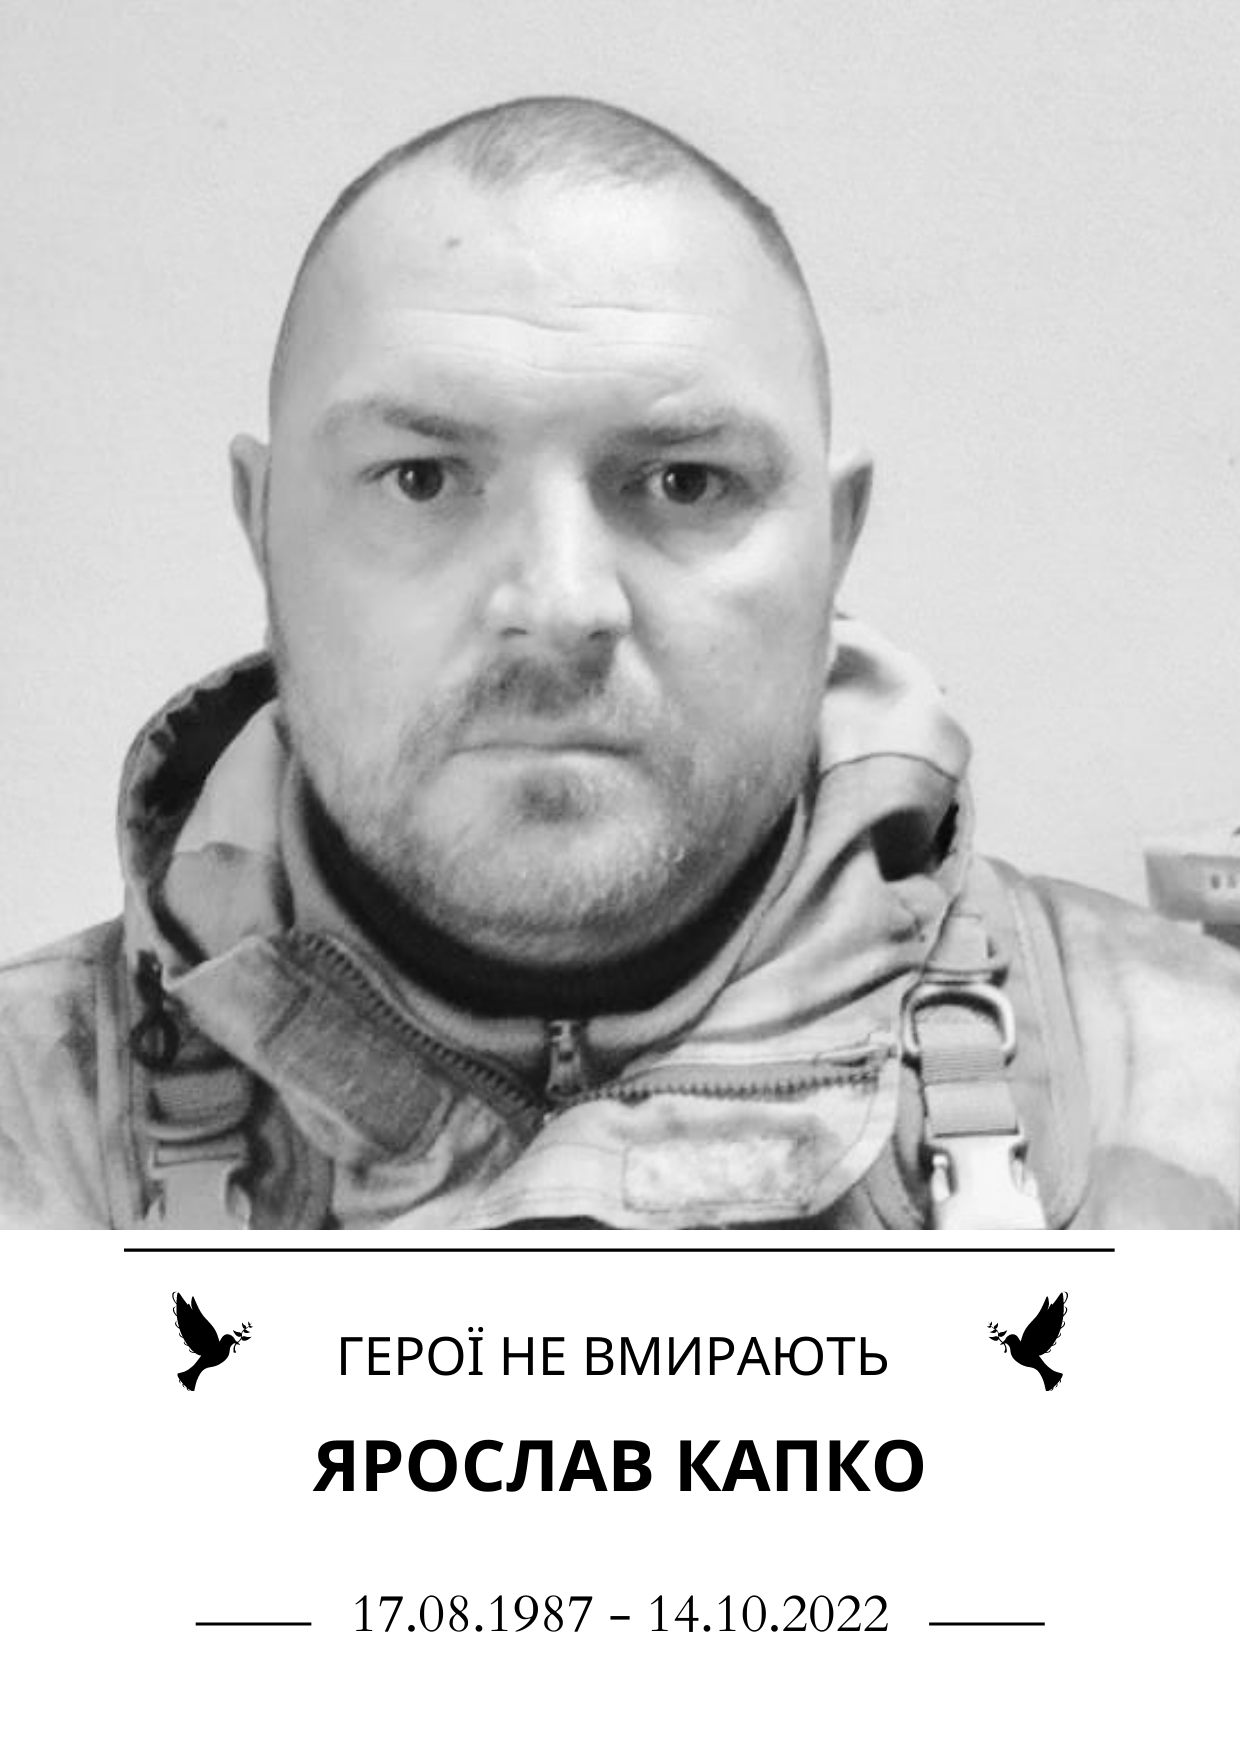 Герої не вмирають Ярослав Капко Роки життя 17 серпня 1987 року - 14 жовтня 2022 року